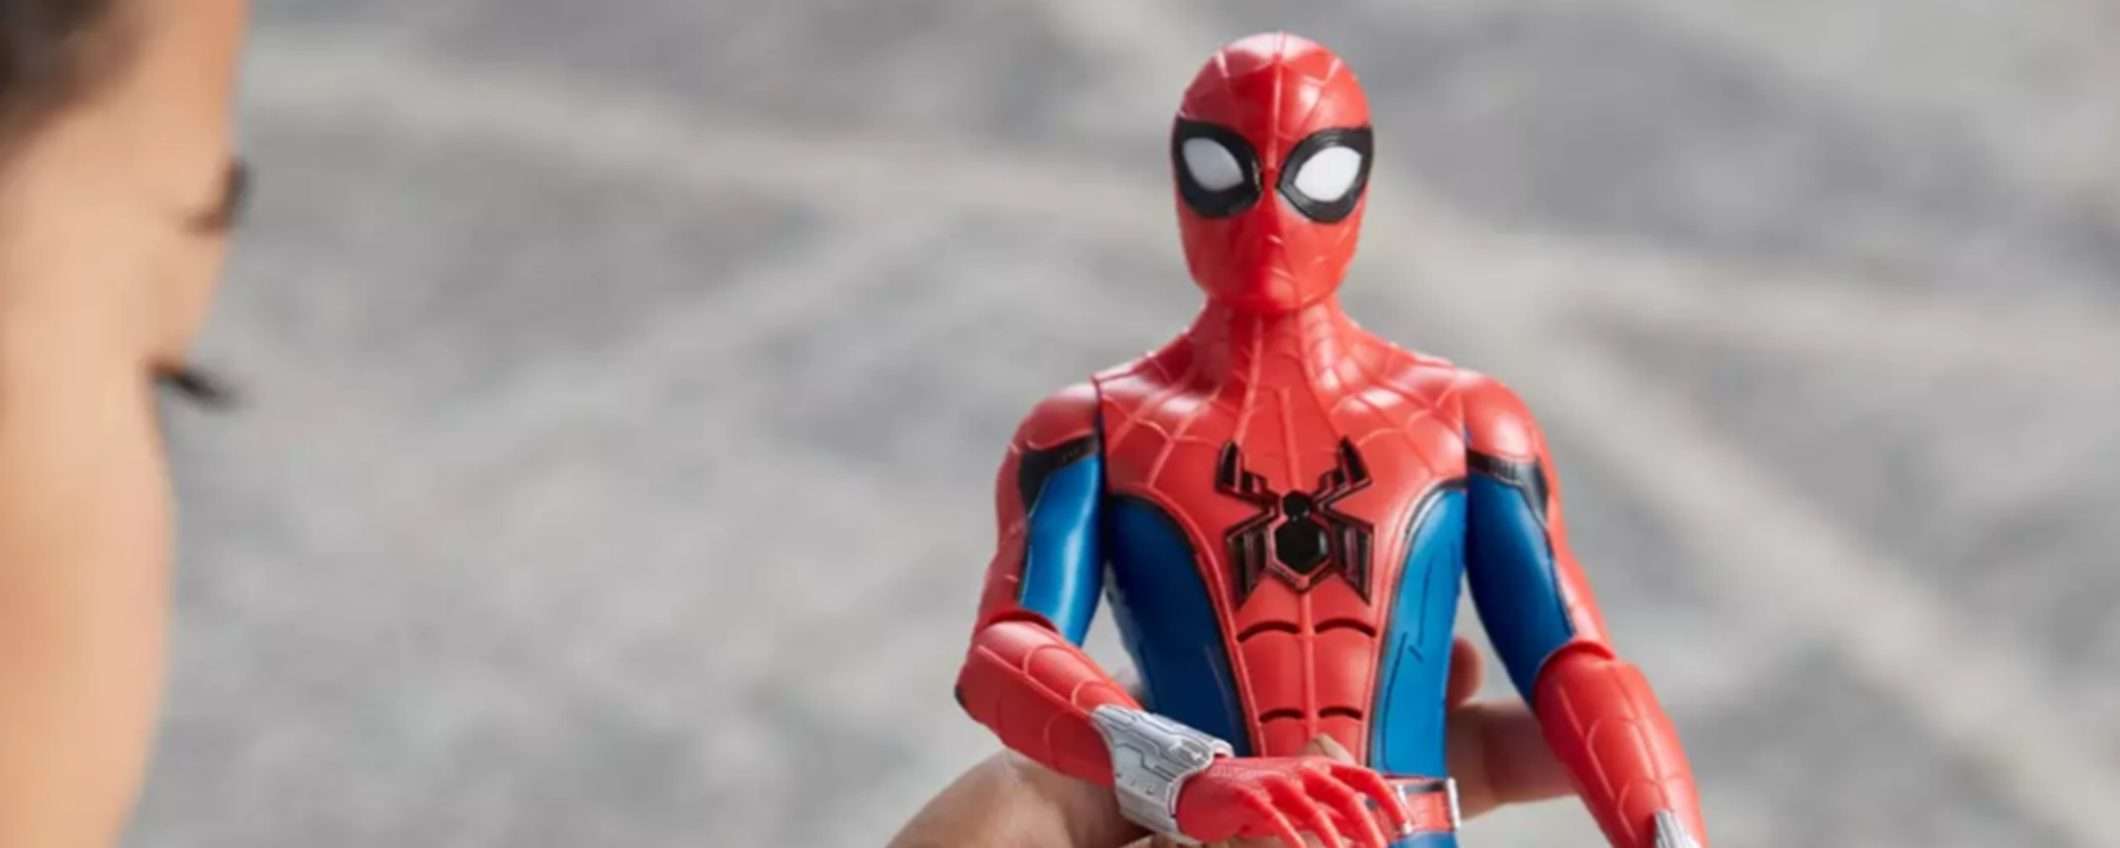 Action figure parlante Spider-Man a quasi metà prezzo su Disney Store